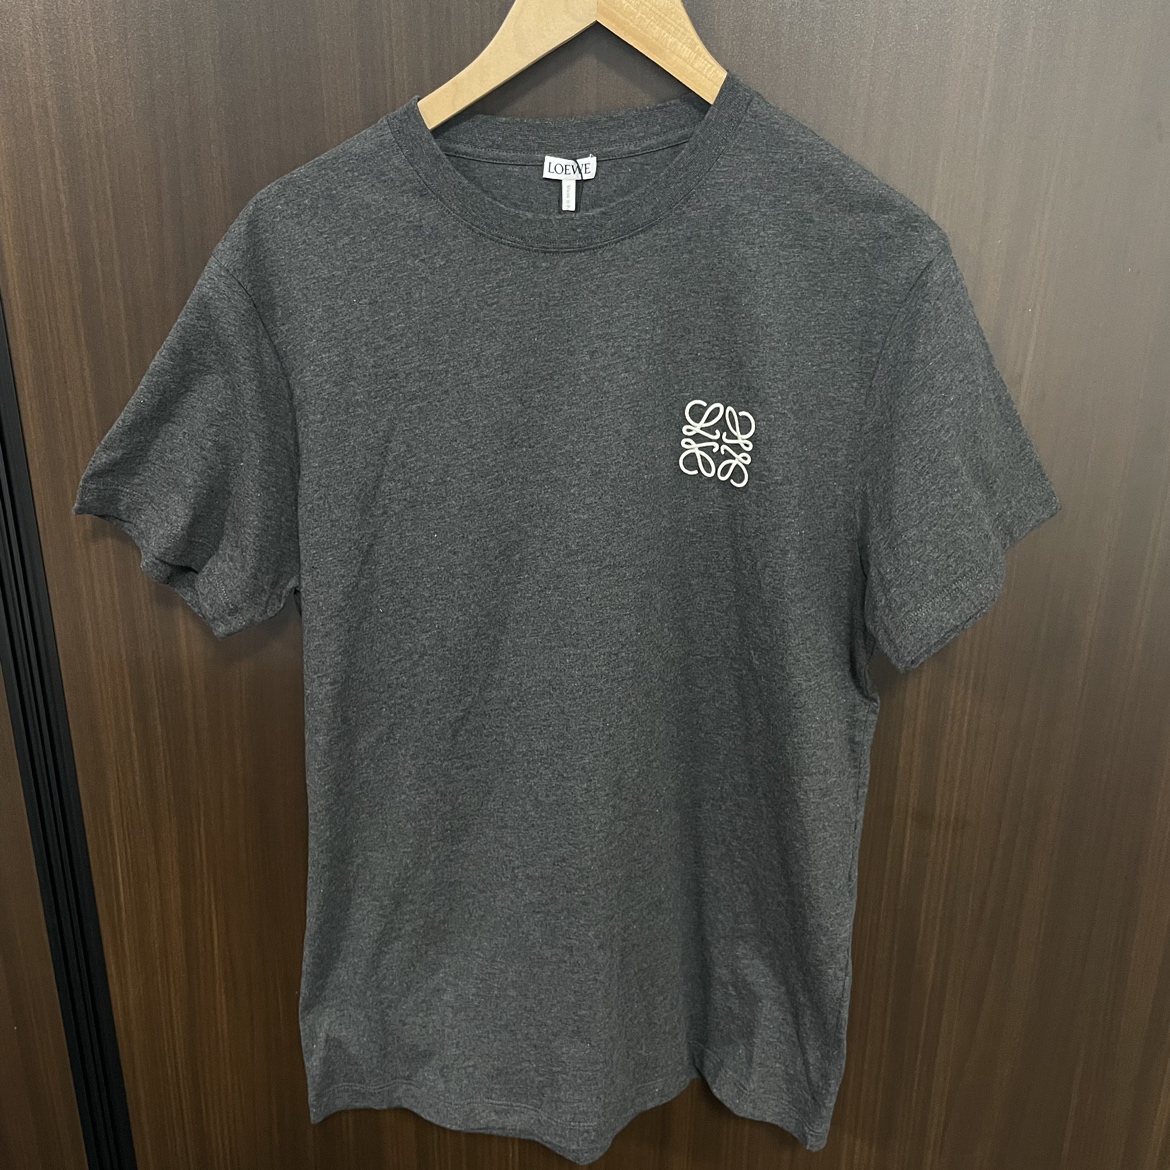 ロエベのチャコールグレー アナグラム Tシャツ H526Y22X31の買取実績です。